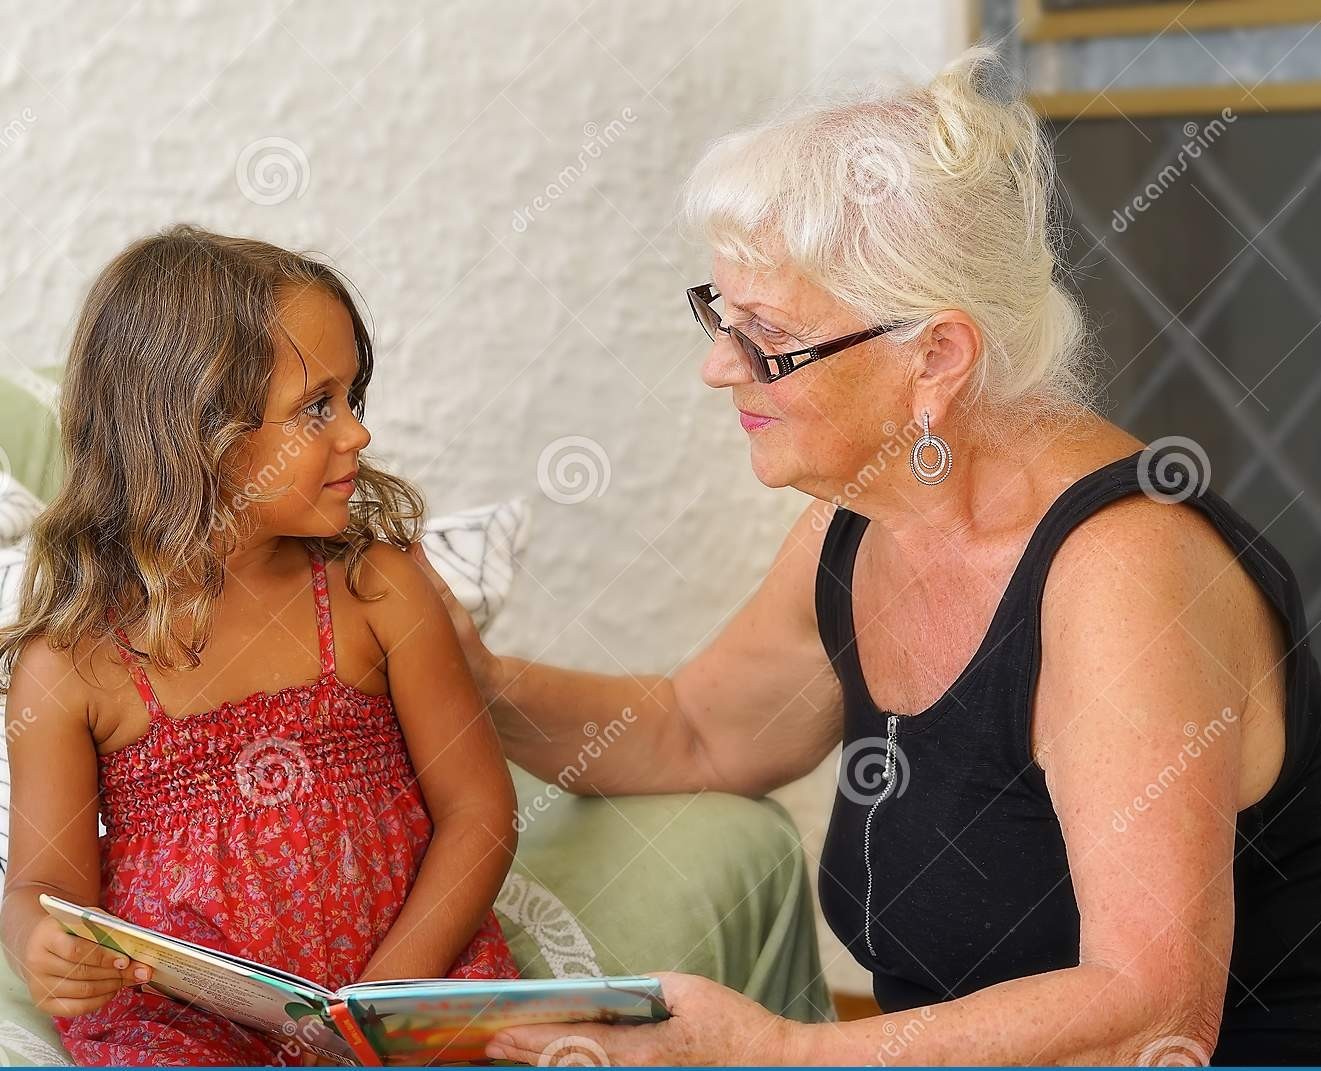 эротика бабушки с малолетками фото 18